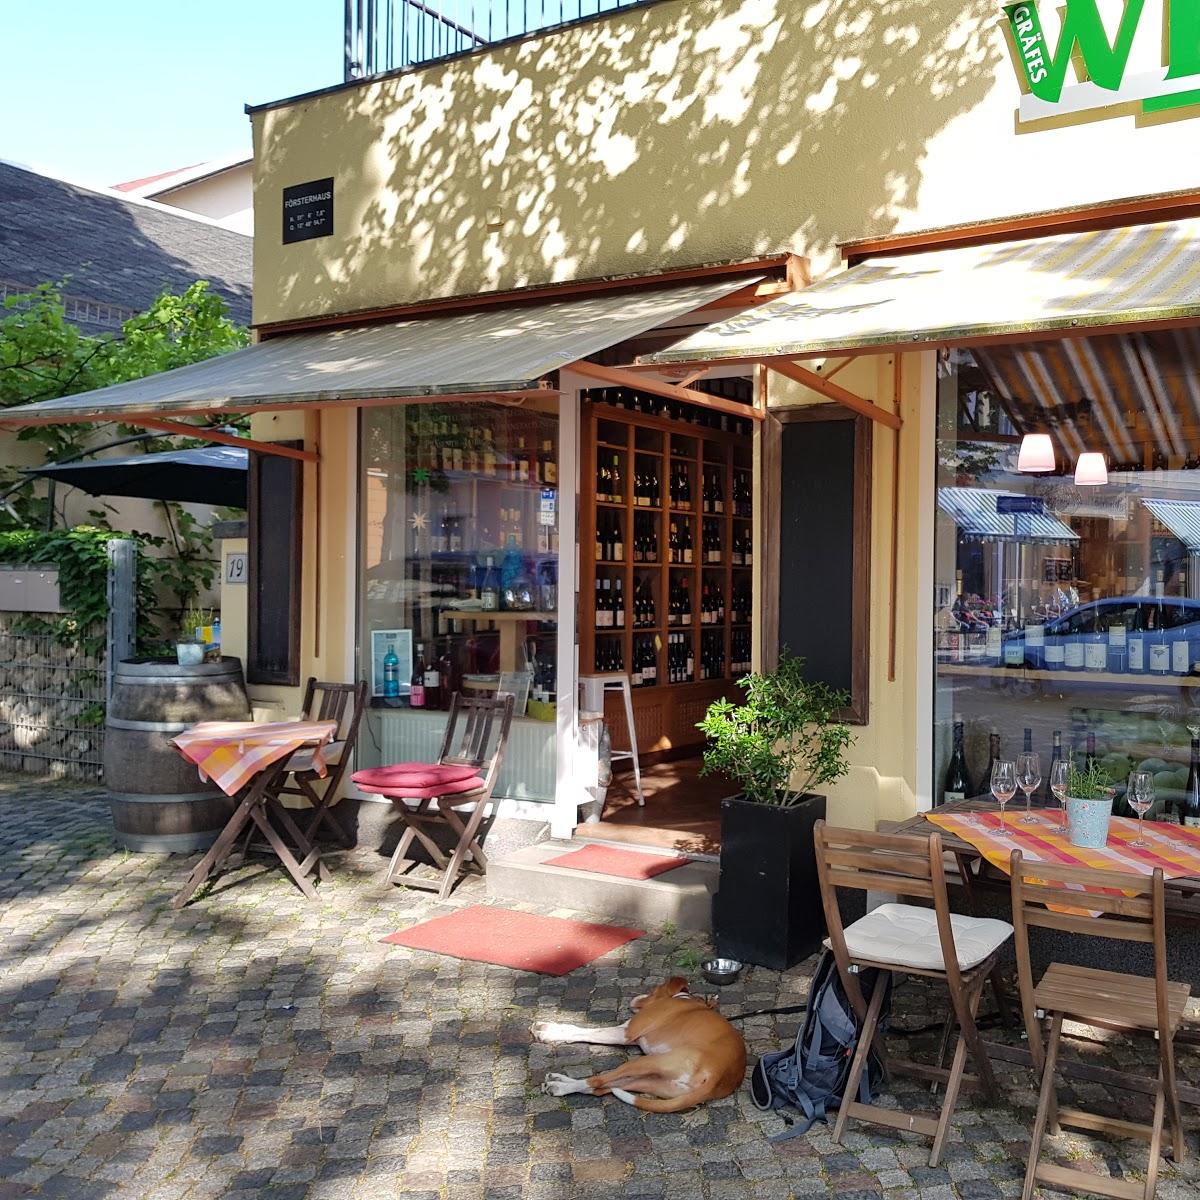 Restaurant "Gräfe`s Wein & Fein" in Radebeul